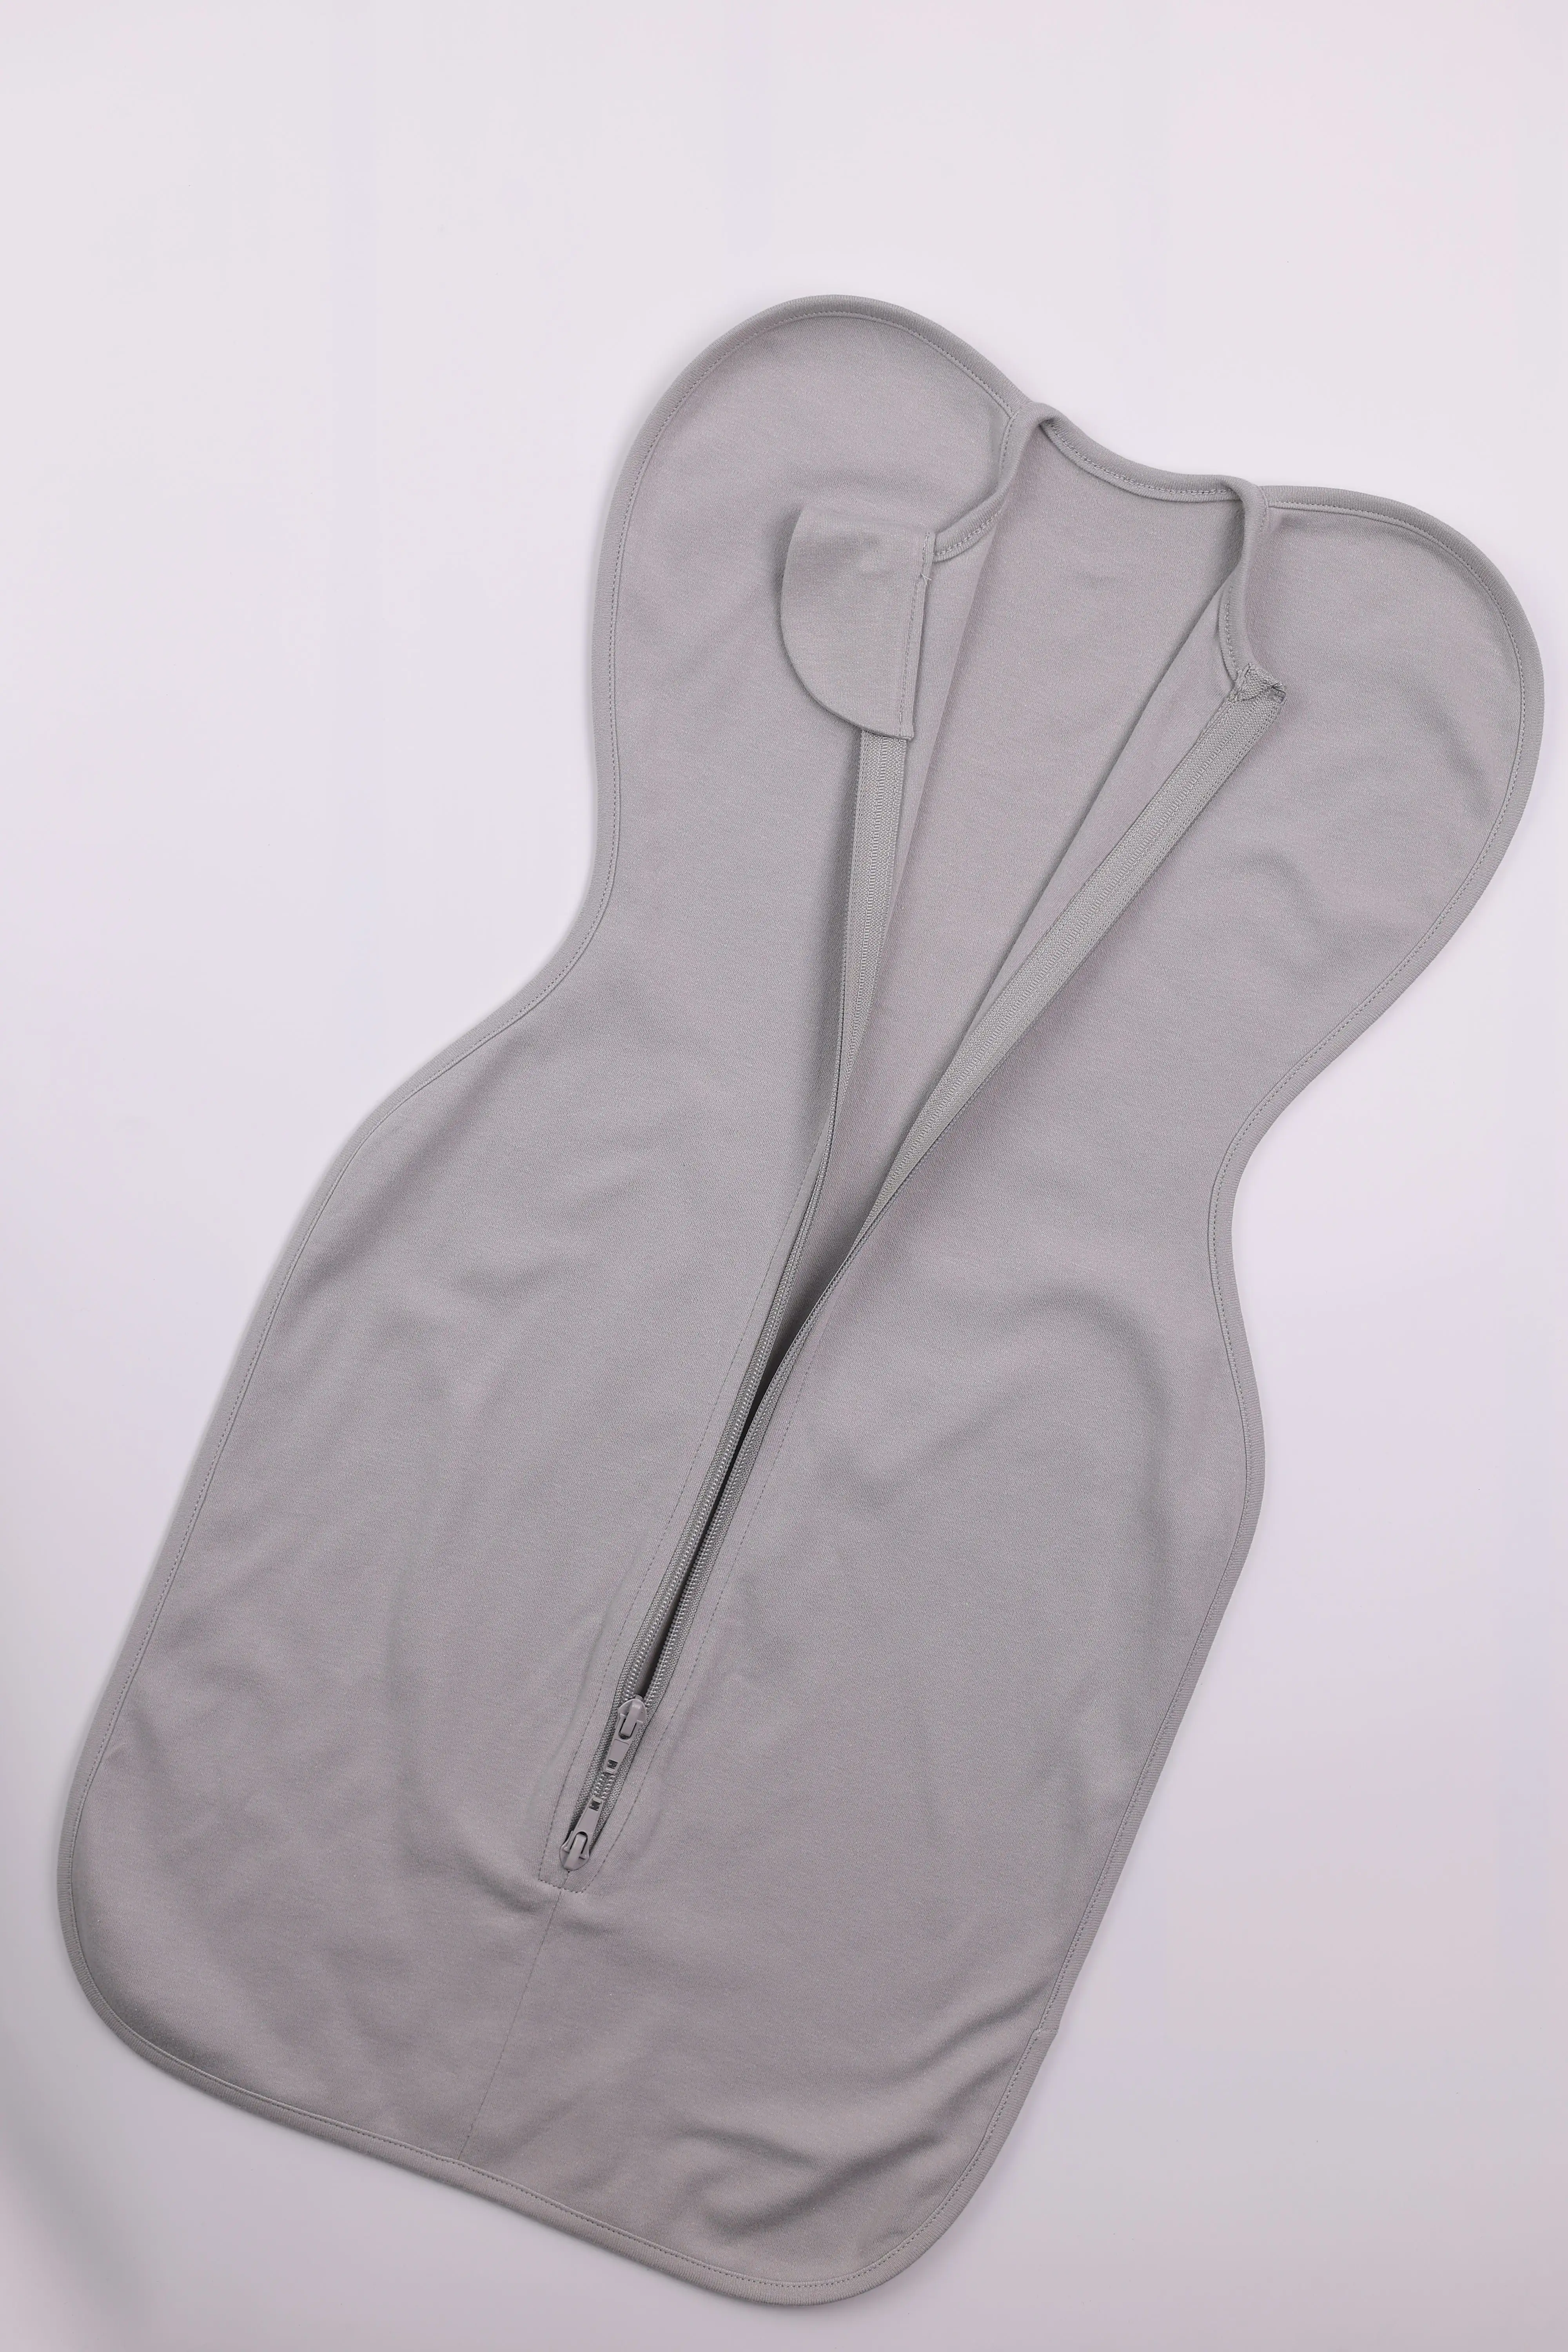 बांस के कपड़े के बच्चों के कपड़े उच्च गुणवत्ता वाले बेबी पजामा नरम जिपर बेबी स्लीपिंग बैग